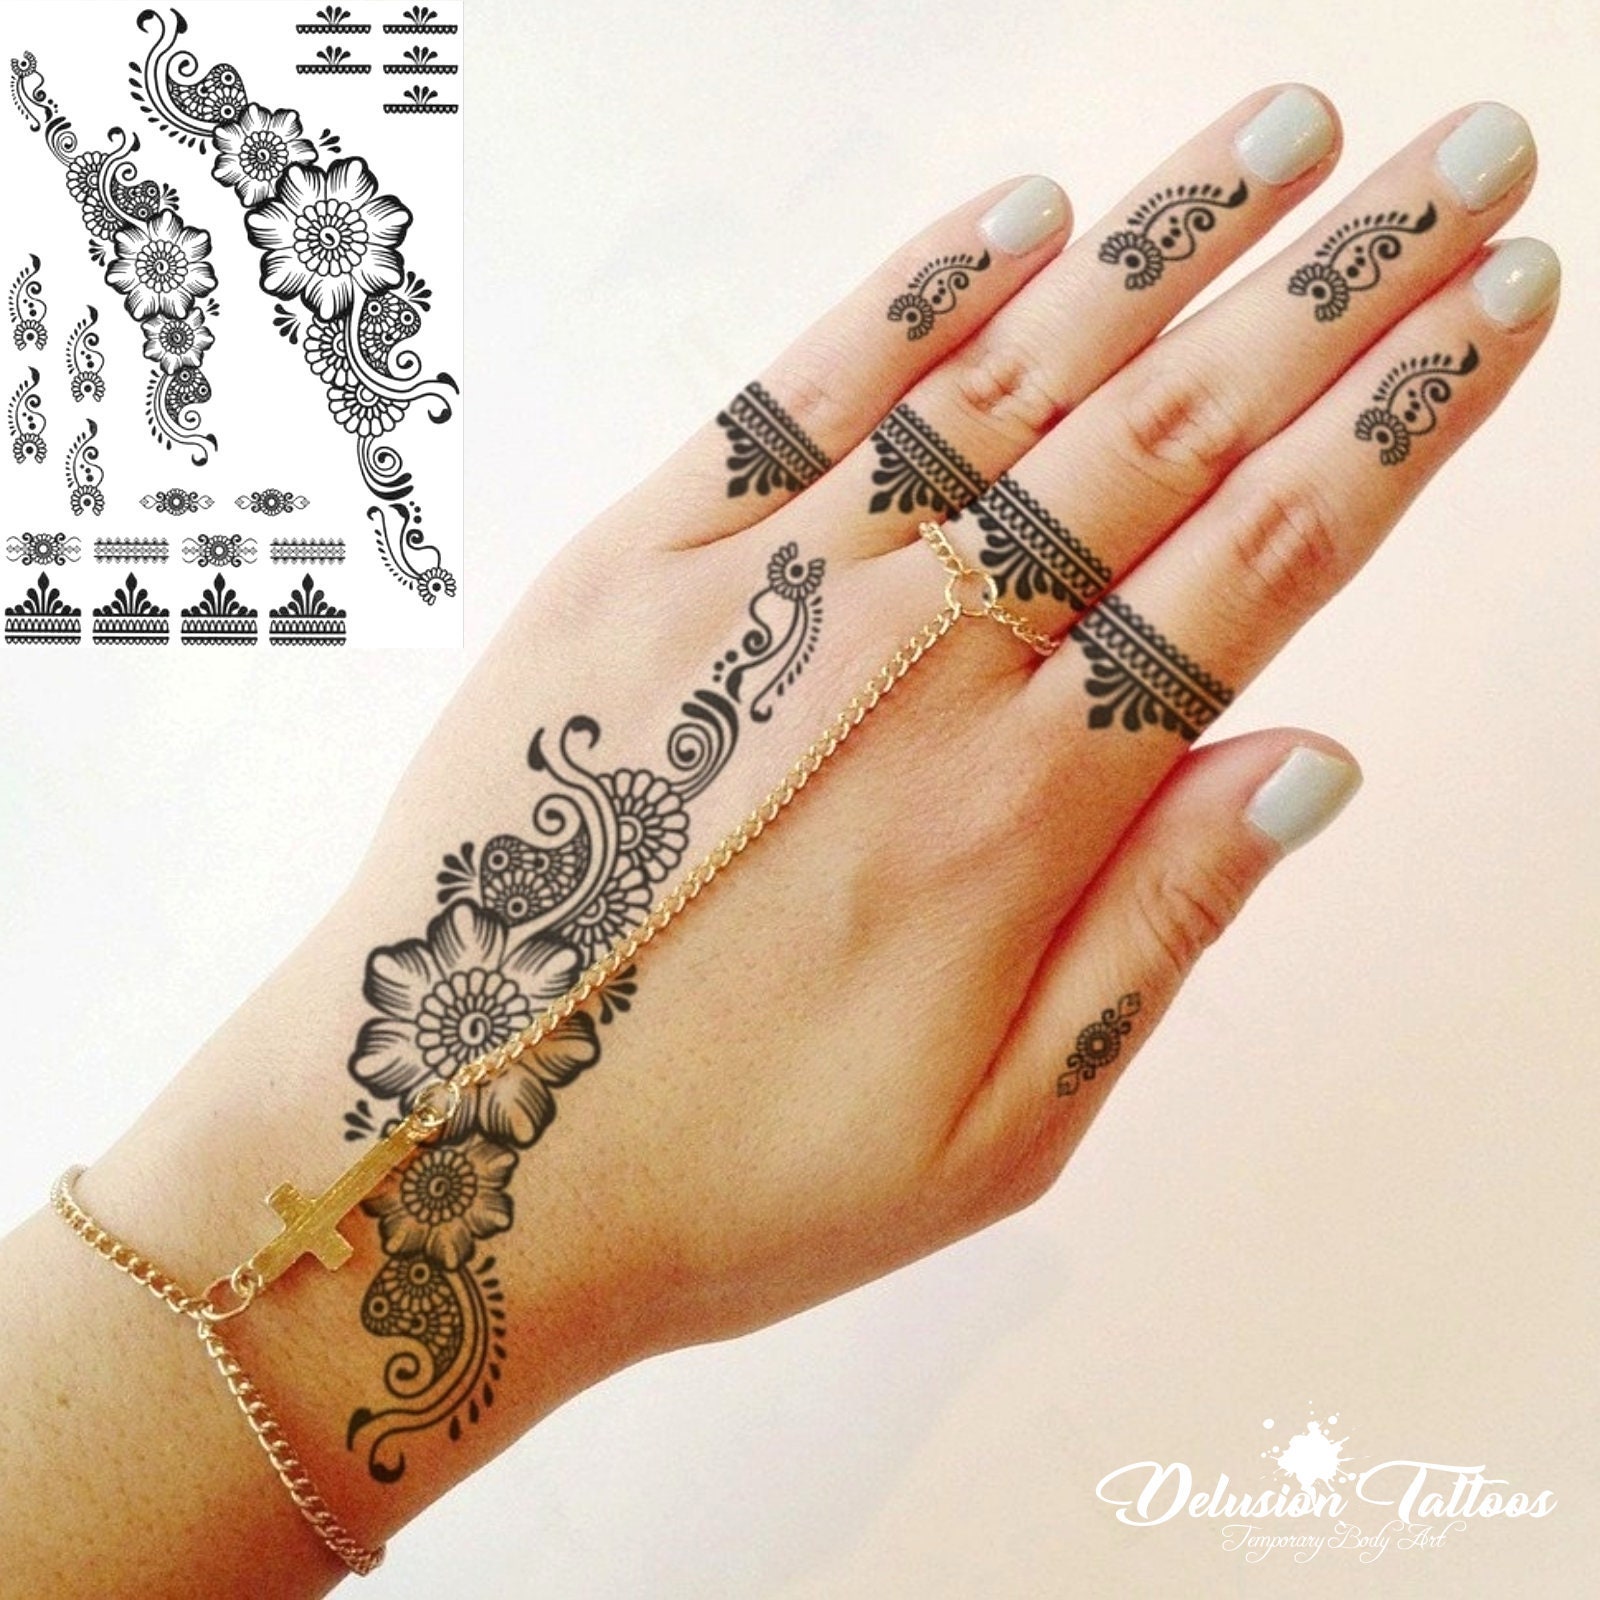 tijdelijke sticker overdracht Zwarte henna | Etsy